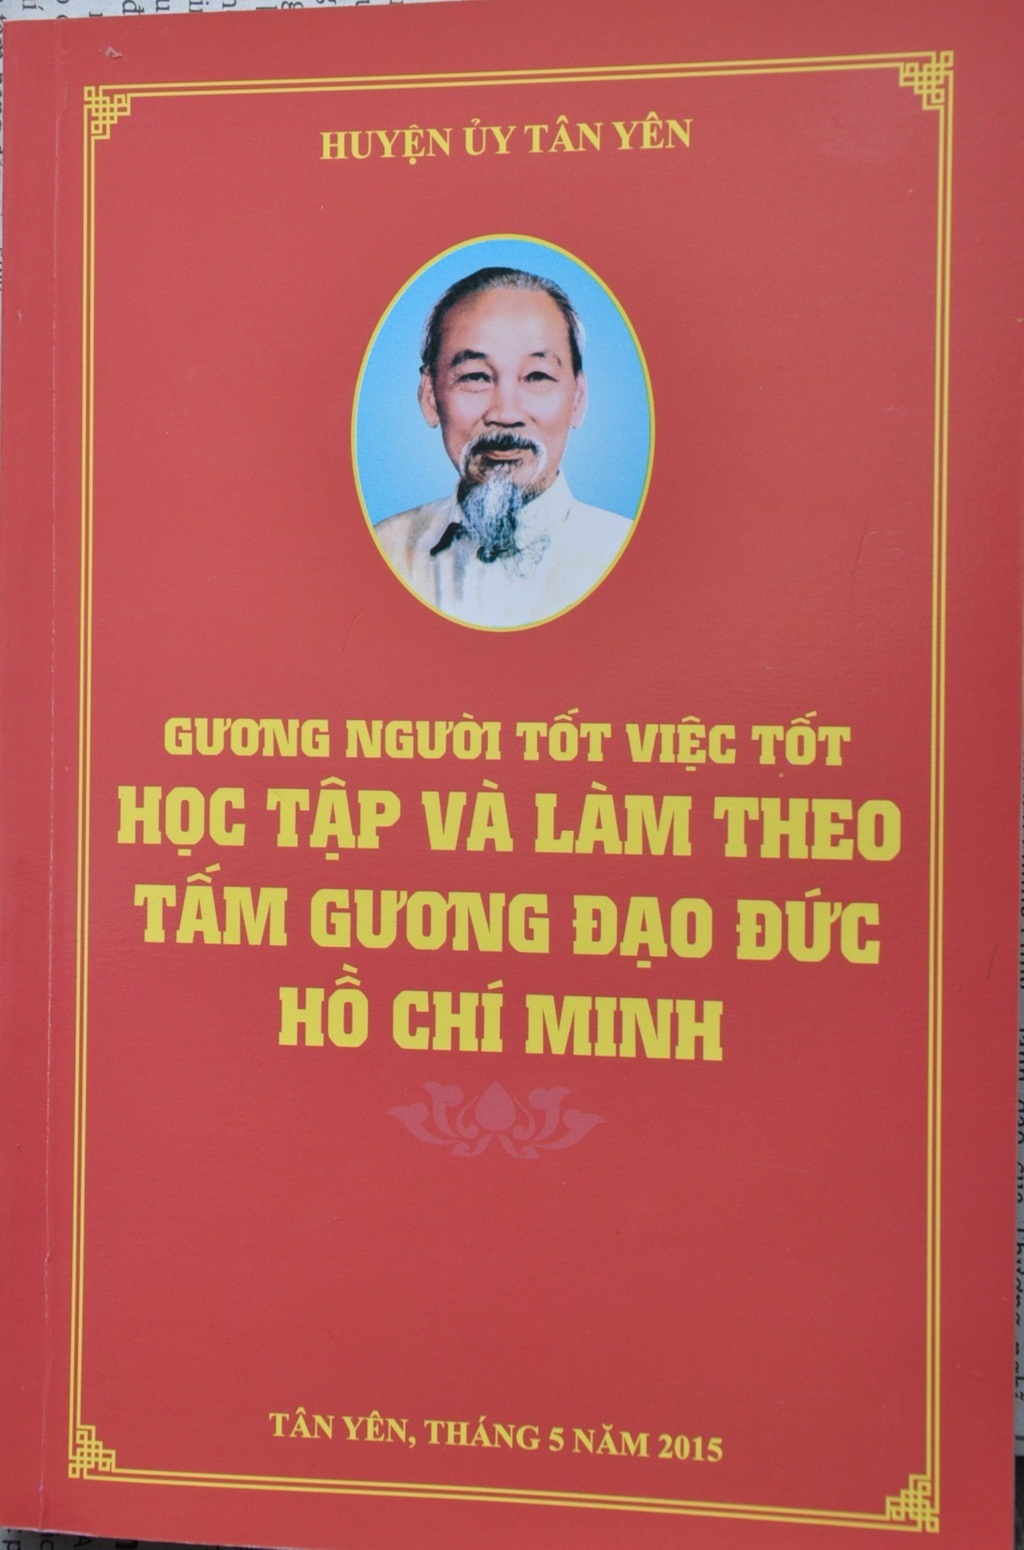 Ra mắt cuốn sách người tốt việc tốt về Học tập và làm theo tấm gương đạo đức Hồ Chí Minh. 